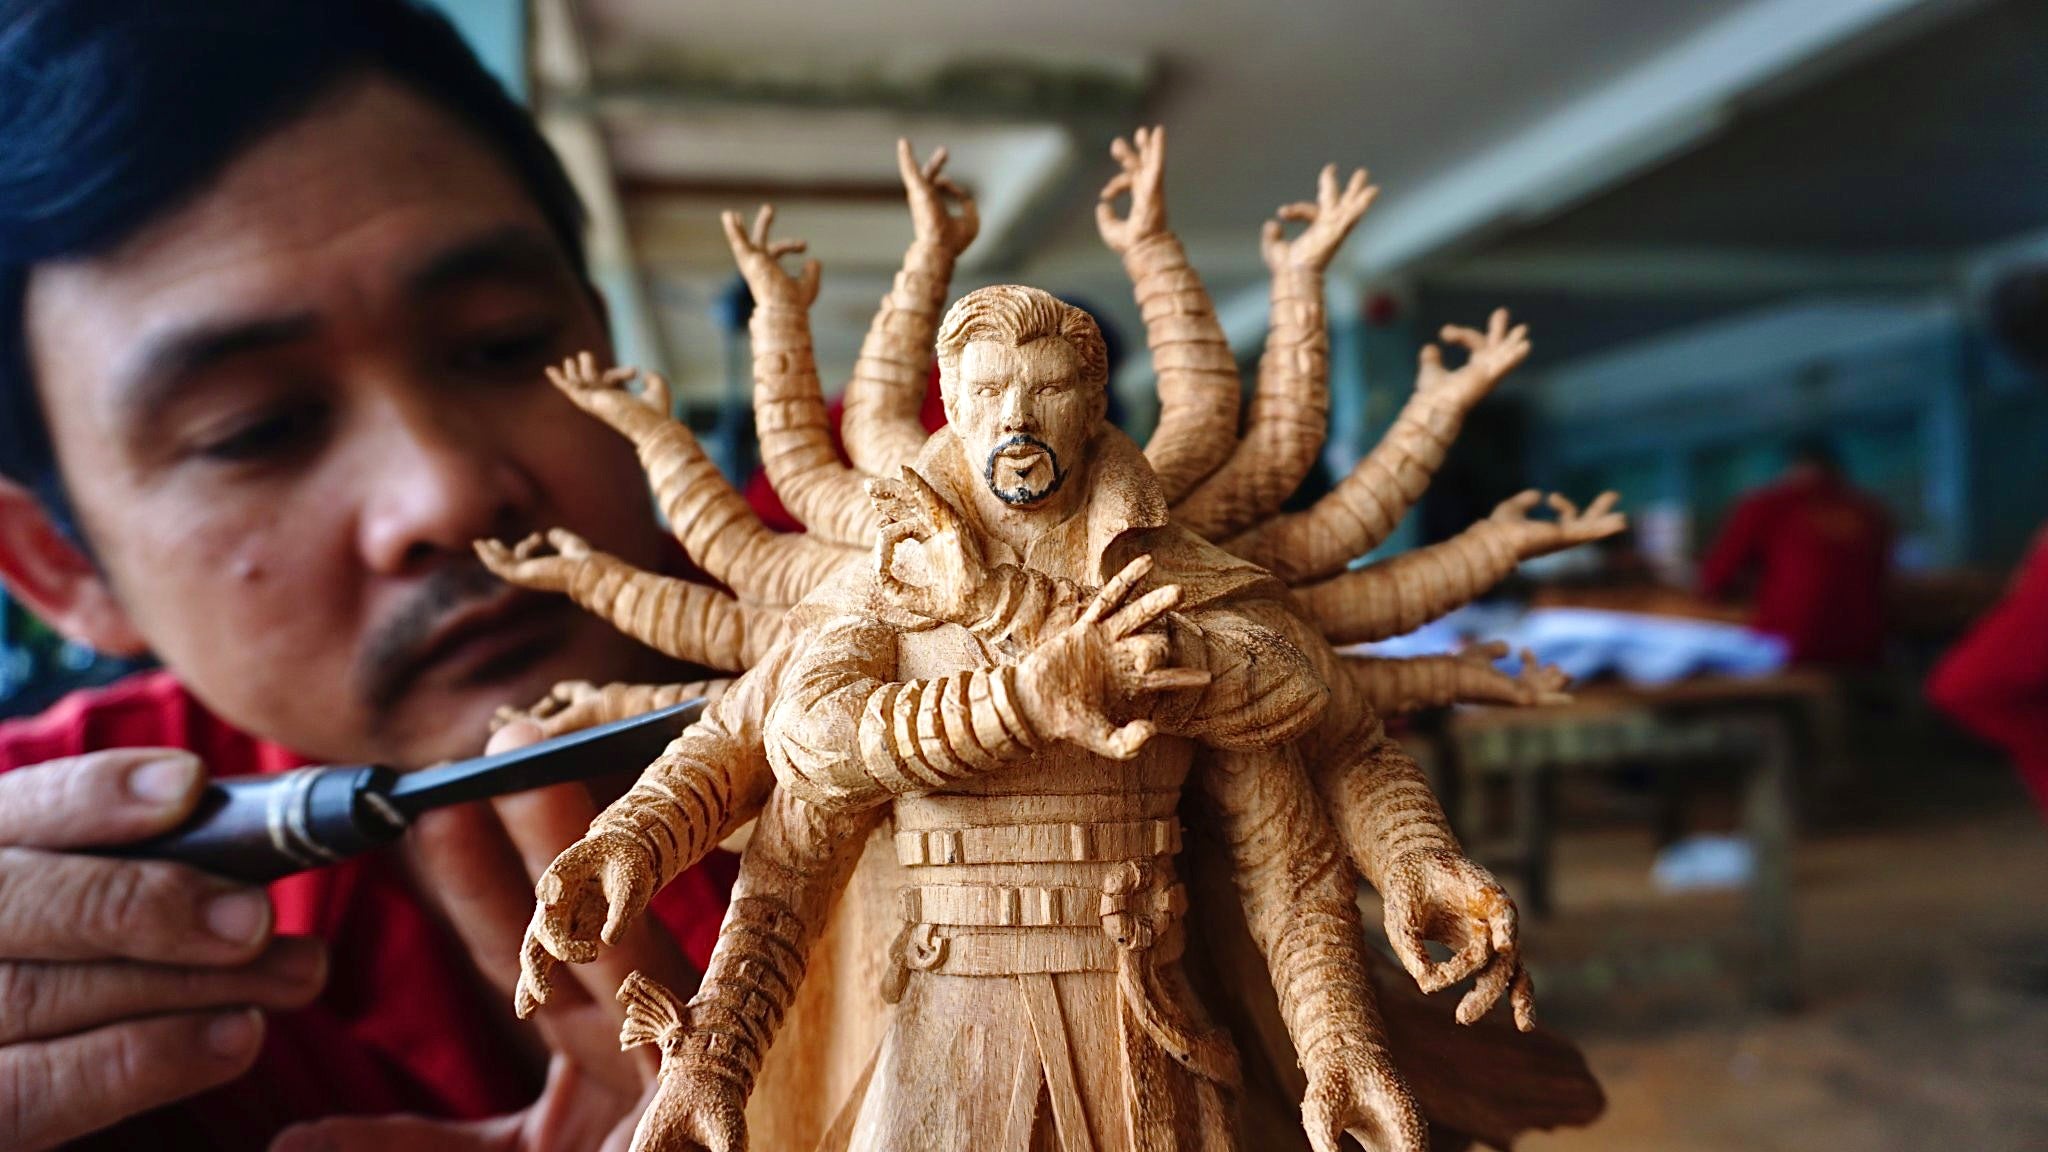 Doctor Strange Figure Wood Carving - Woodart Vietnam 